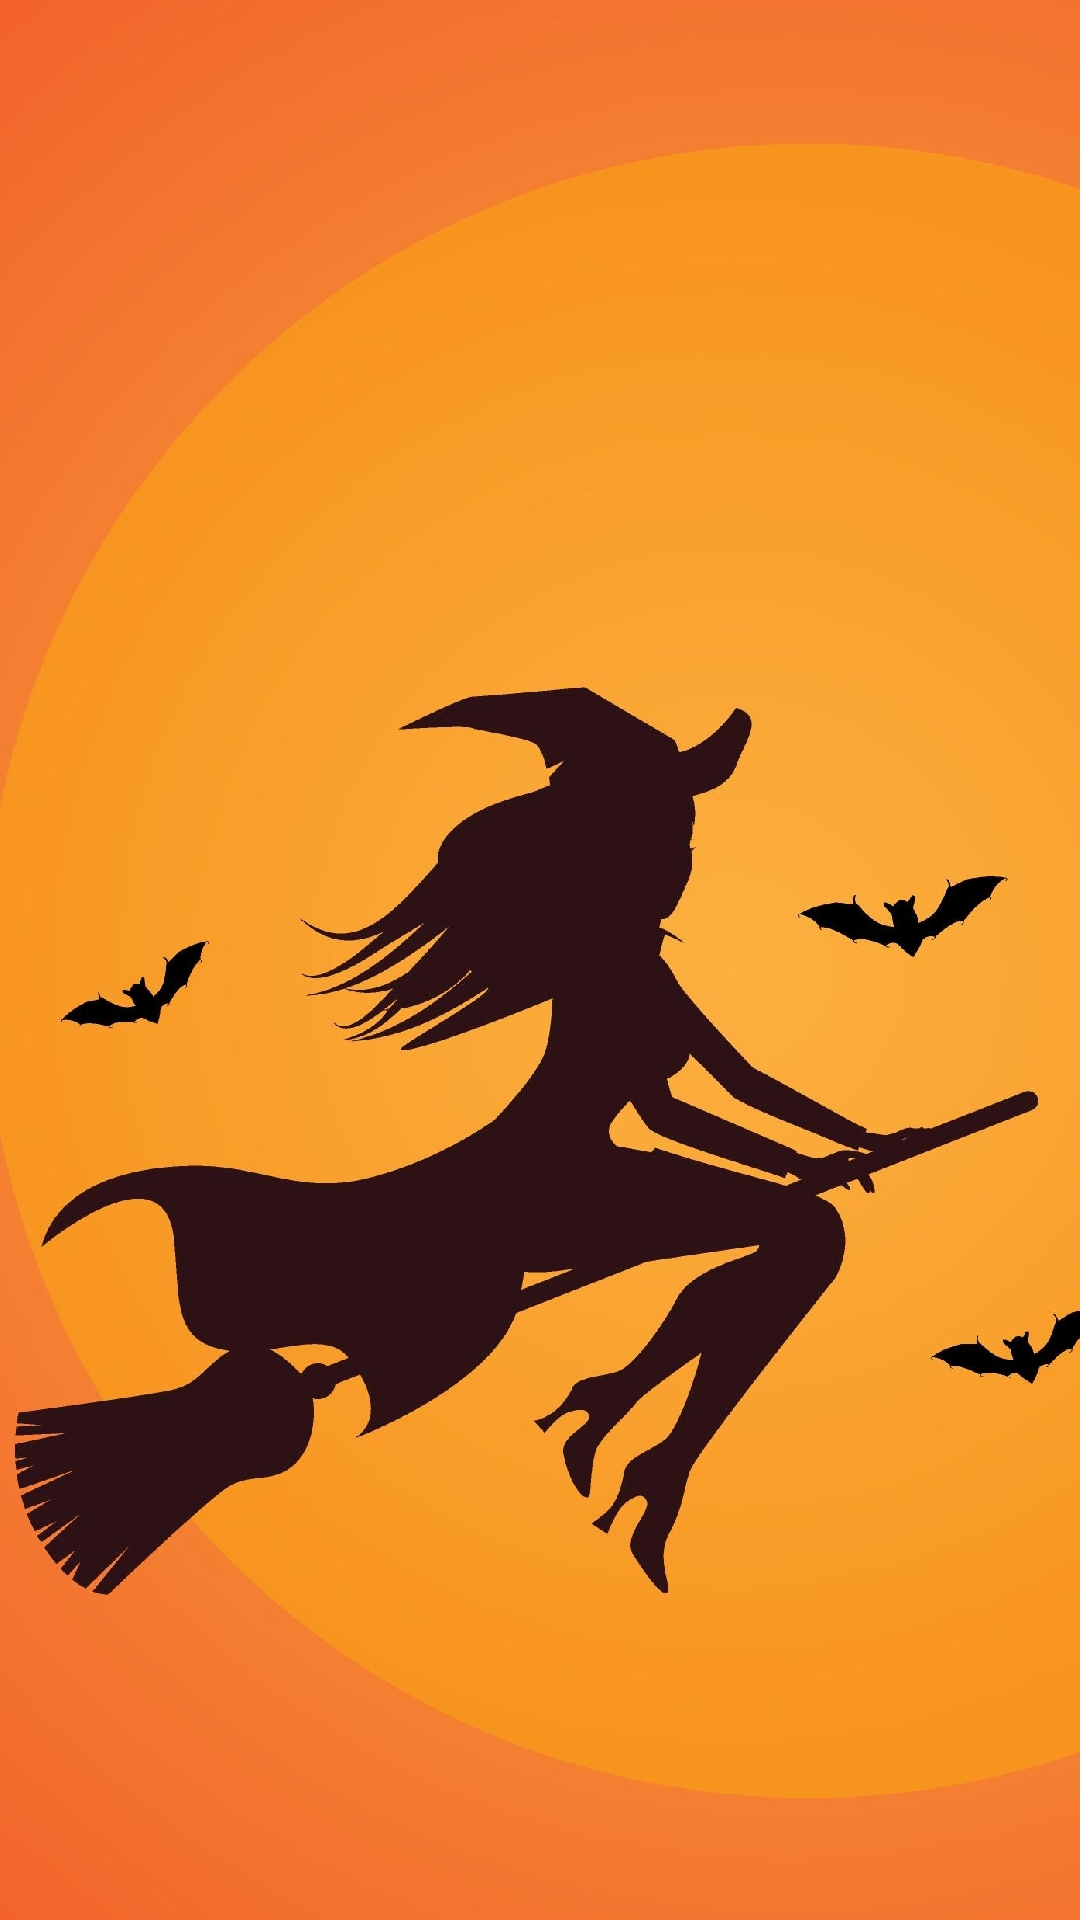 Halloween iPhone Wallpaper - PixelsTalk.Net